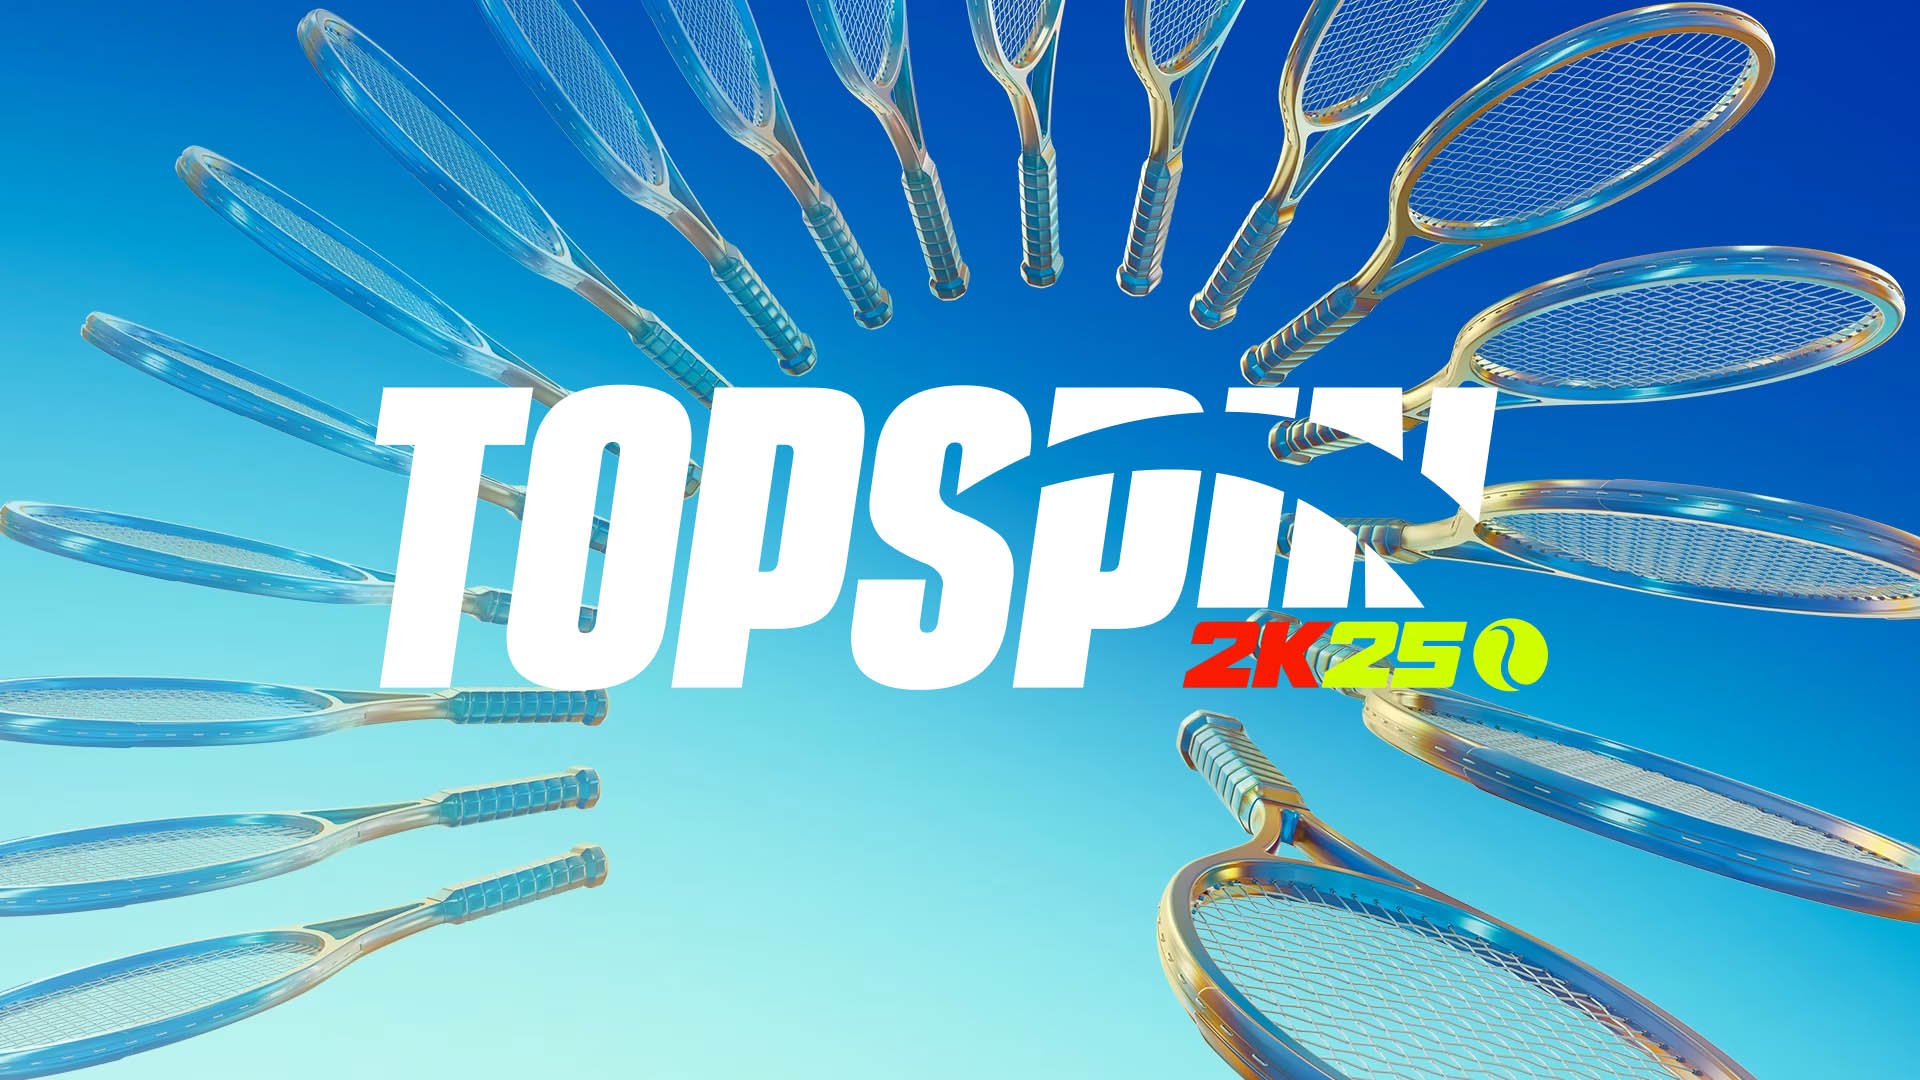 Top Spin 2K25 : la mort du jeu déjà programmée, les joueurs en colère